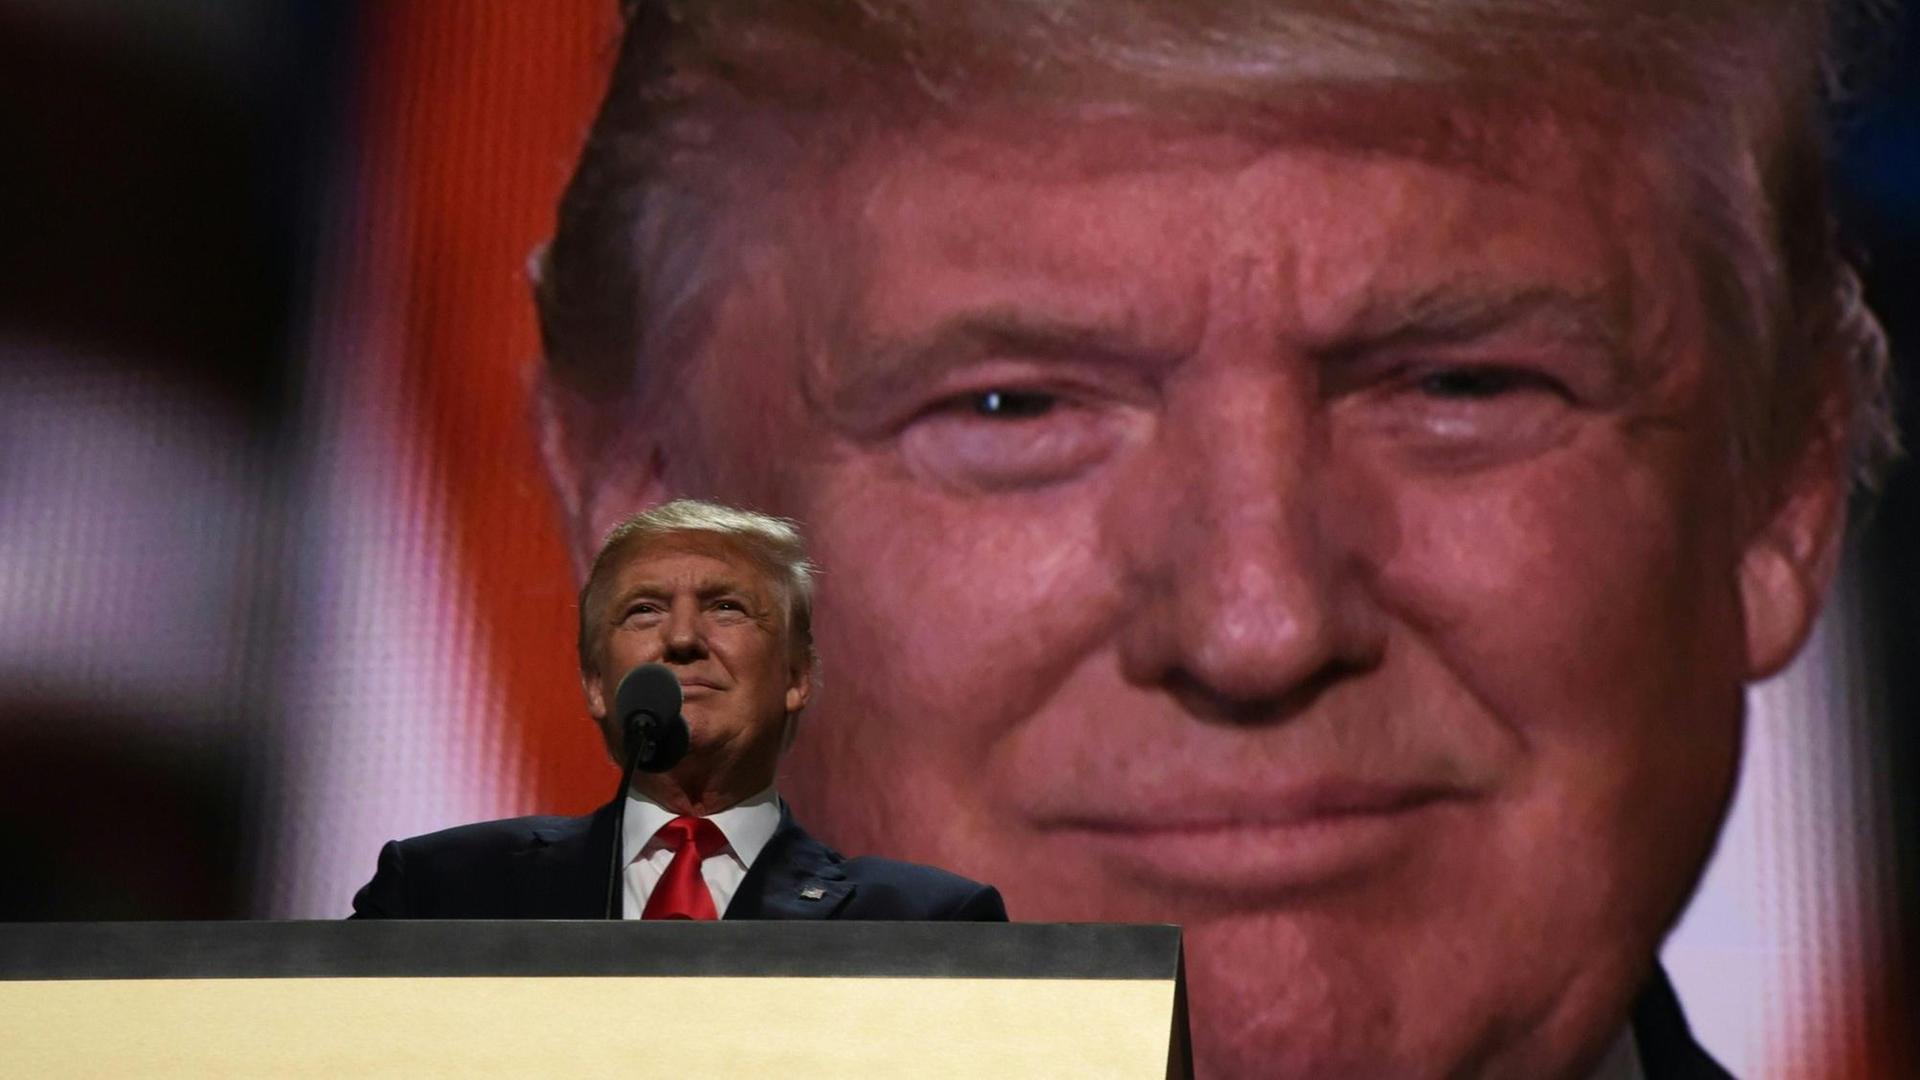 Donald Trump am Rednerpult, hinter ihm sein Gesicht in Großaufnahme auf einer Leinwand